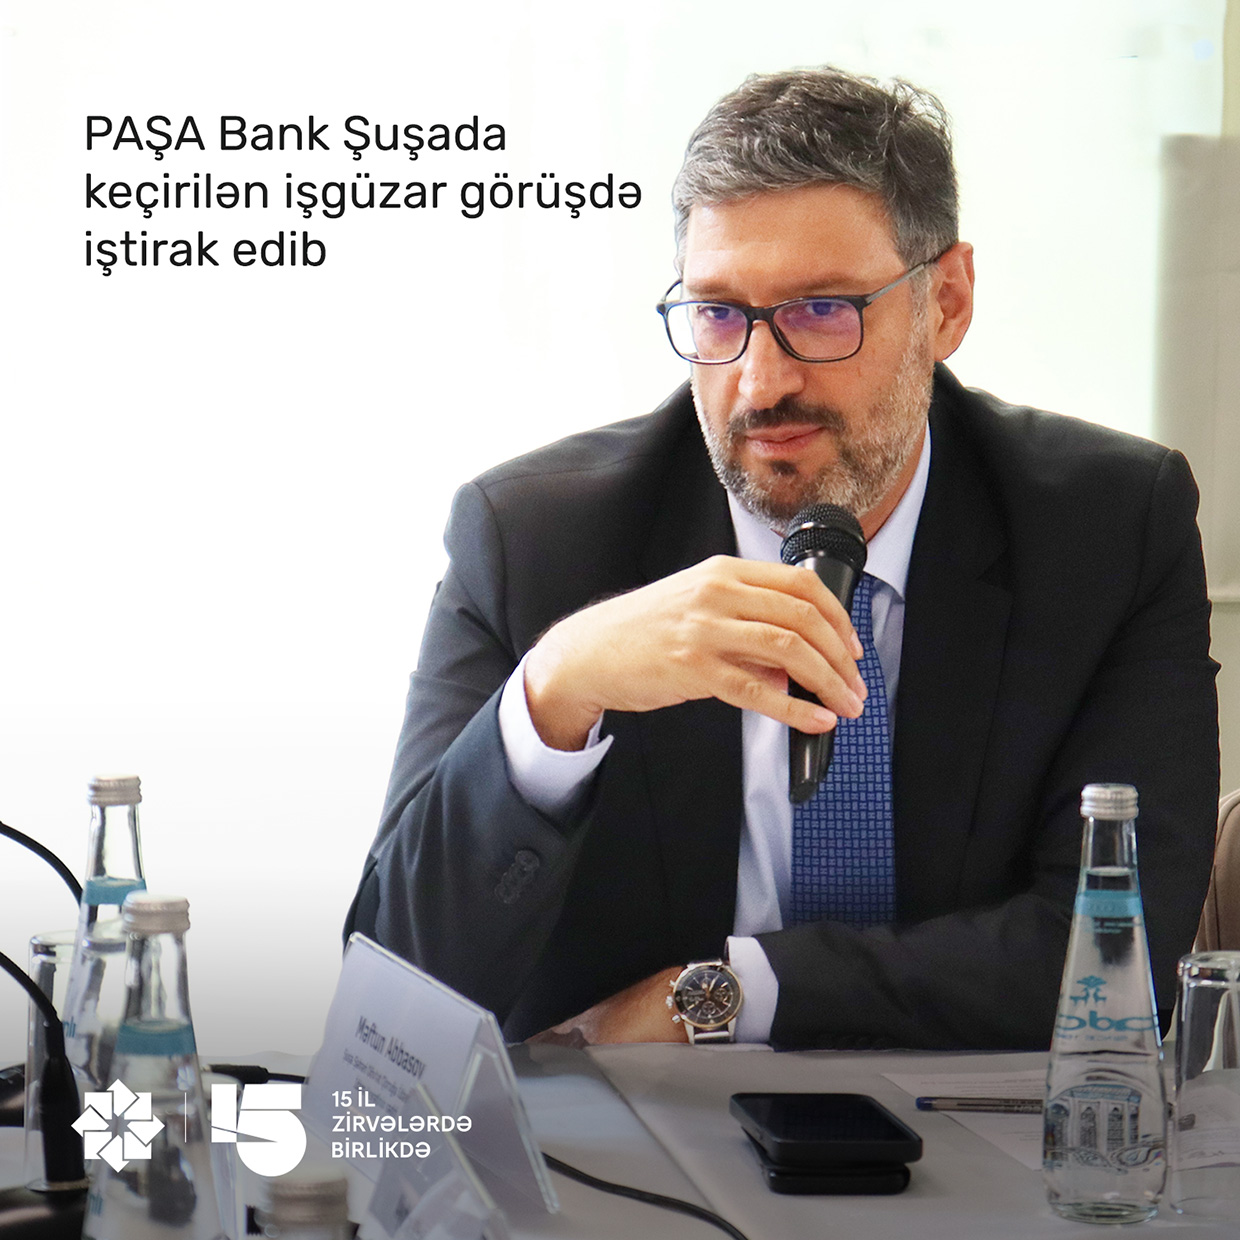 “PAŞA Bank” Qarabağ Dirçəliş Fondunun Şuşada təşkil etdiyi  işgüzar görüşdə iştirak edib